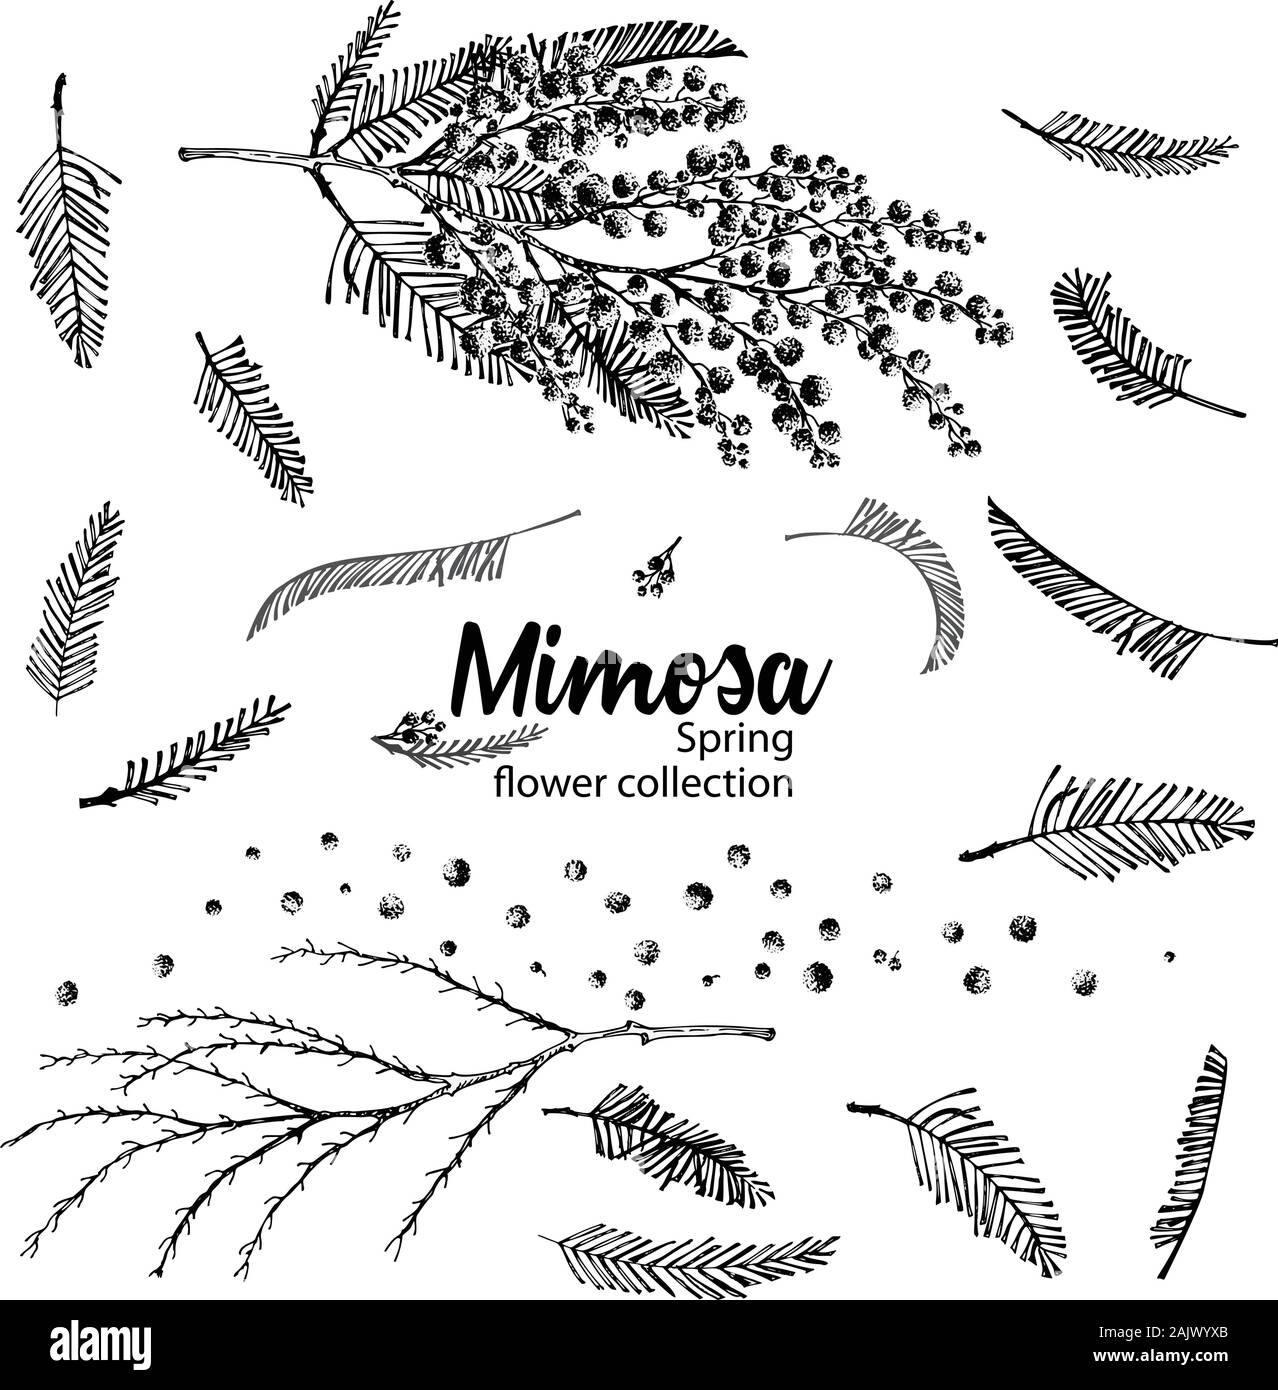 Satz von Hand gezeichnete Skizze Elemente für Zweigstellen von Mimosa Blüte in Gelb und Grün. Eine gute Idee für Ihr Design Poster, Grußkarten, Web Stock Vektor